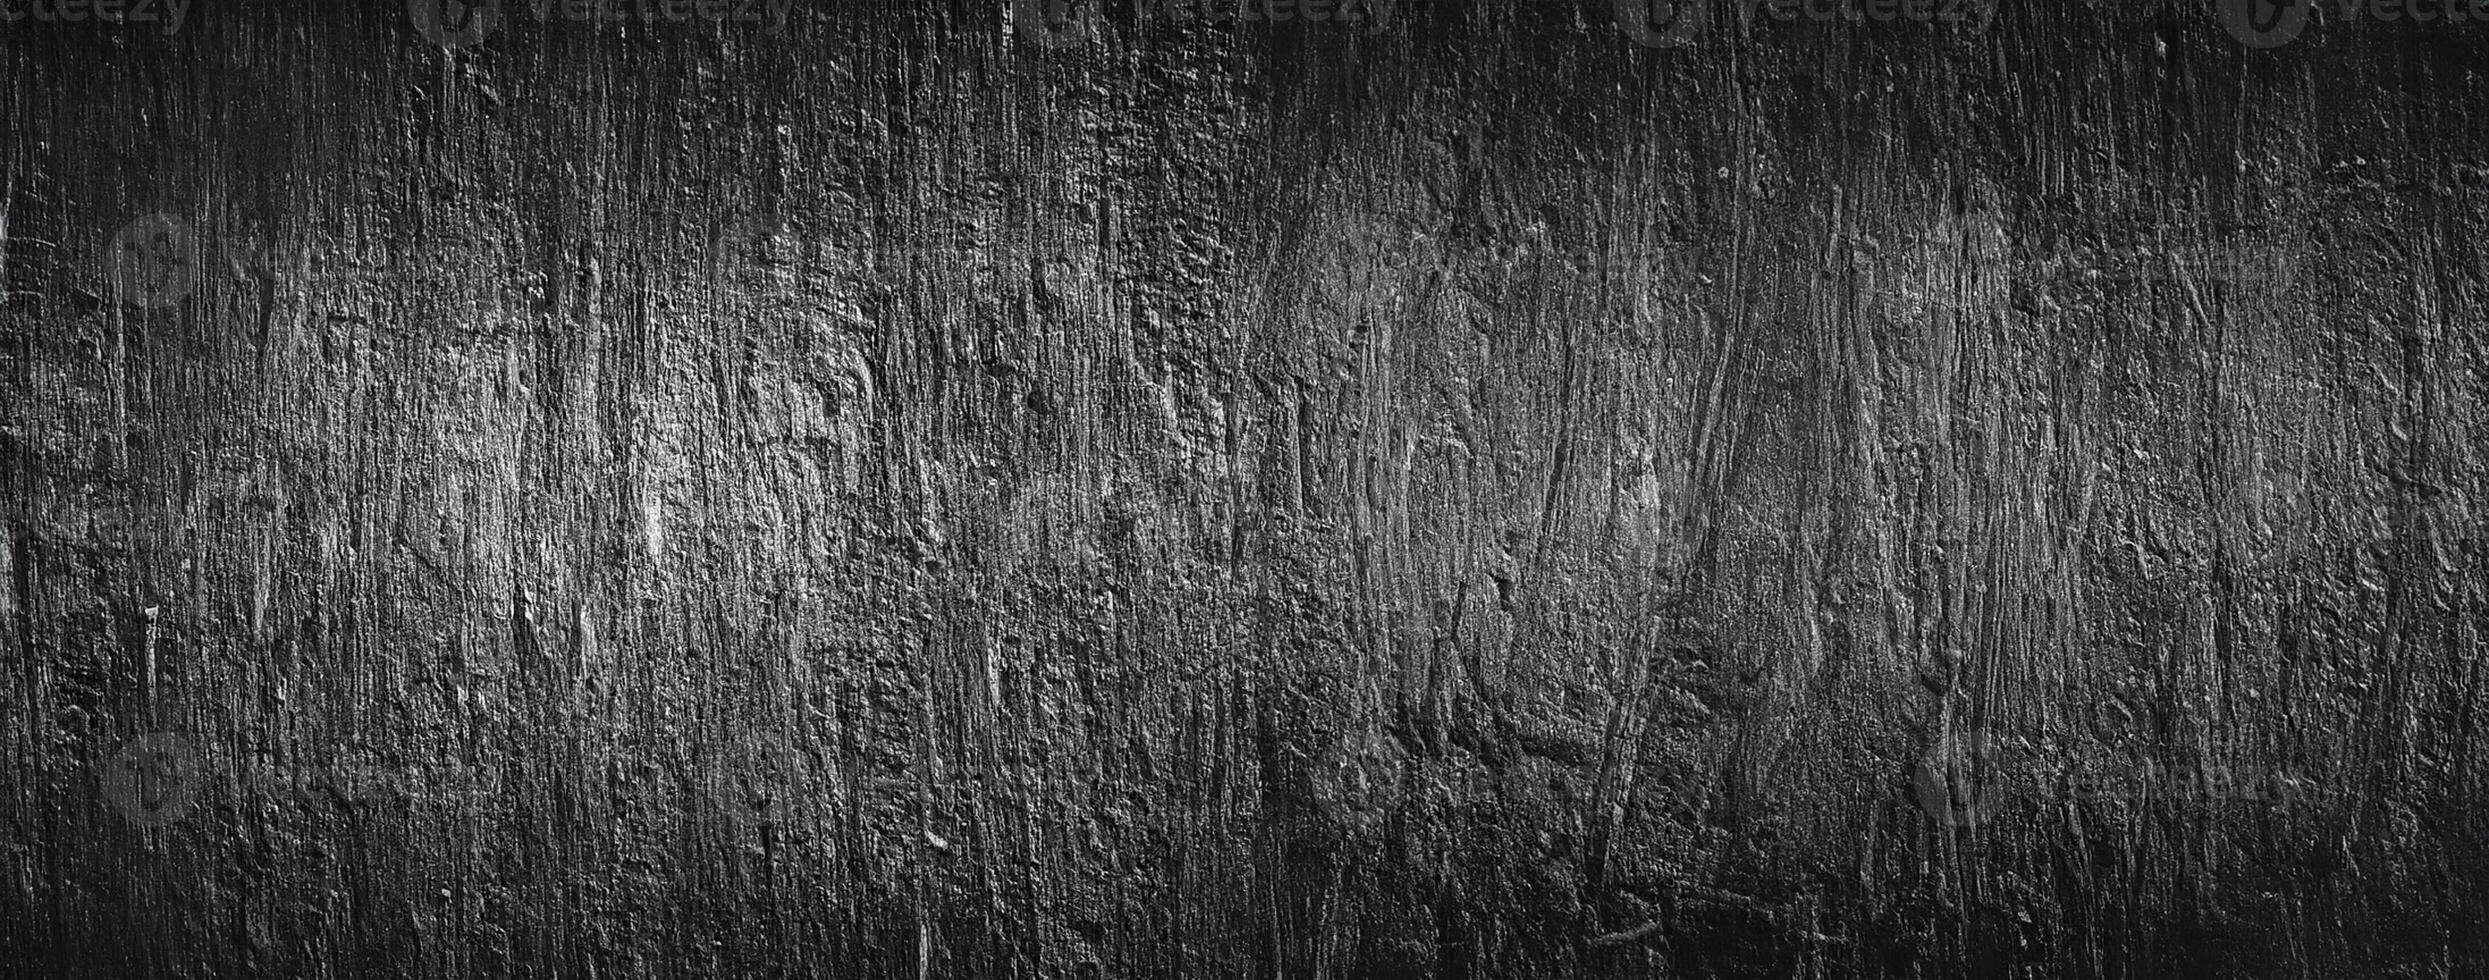 mörk svart abstrakt cement betong vägg textur bakgrund foto